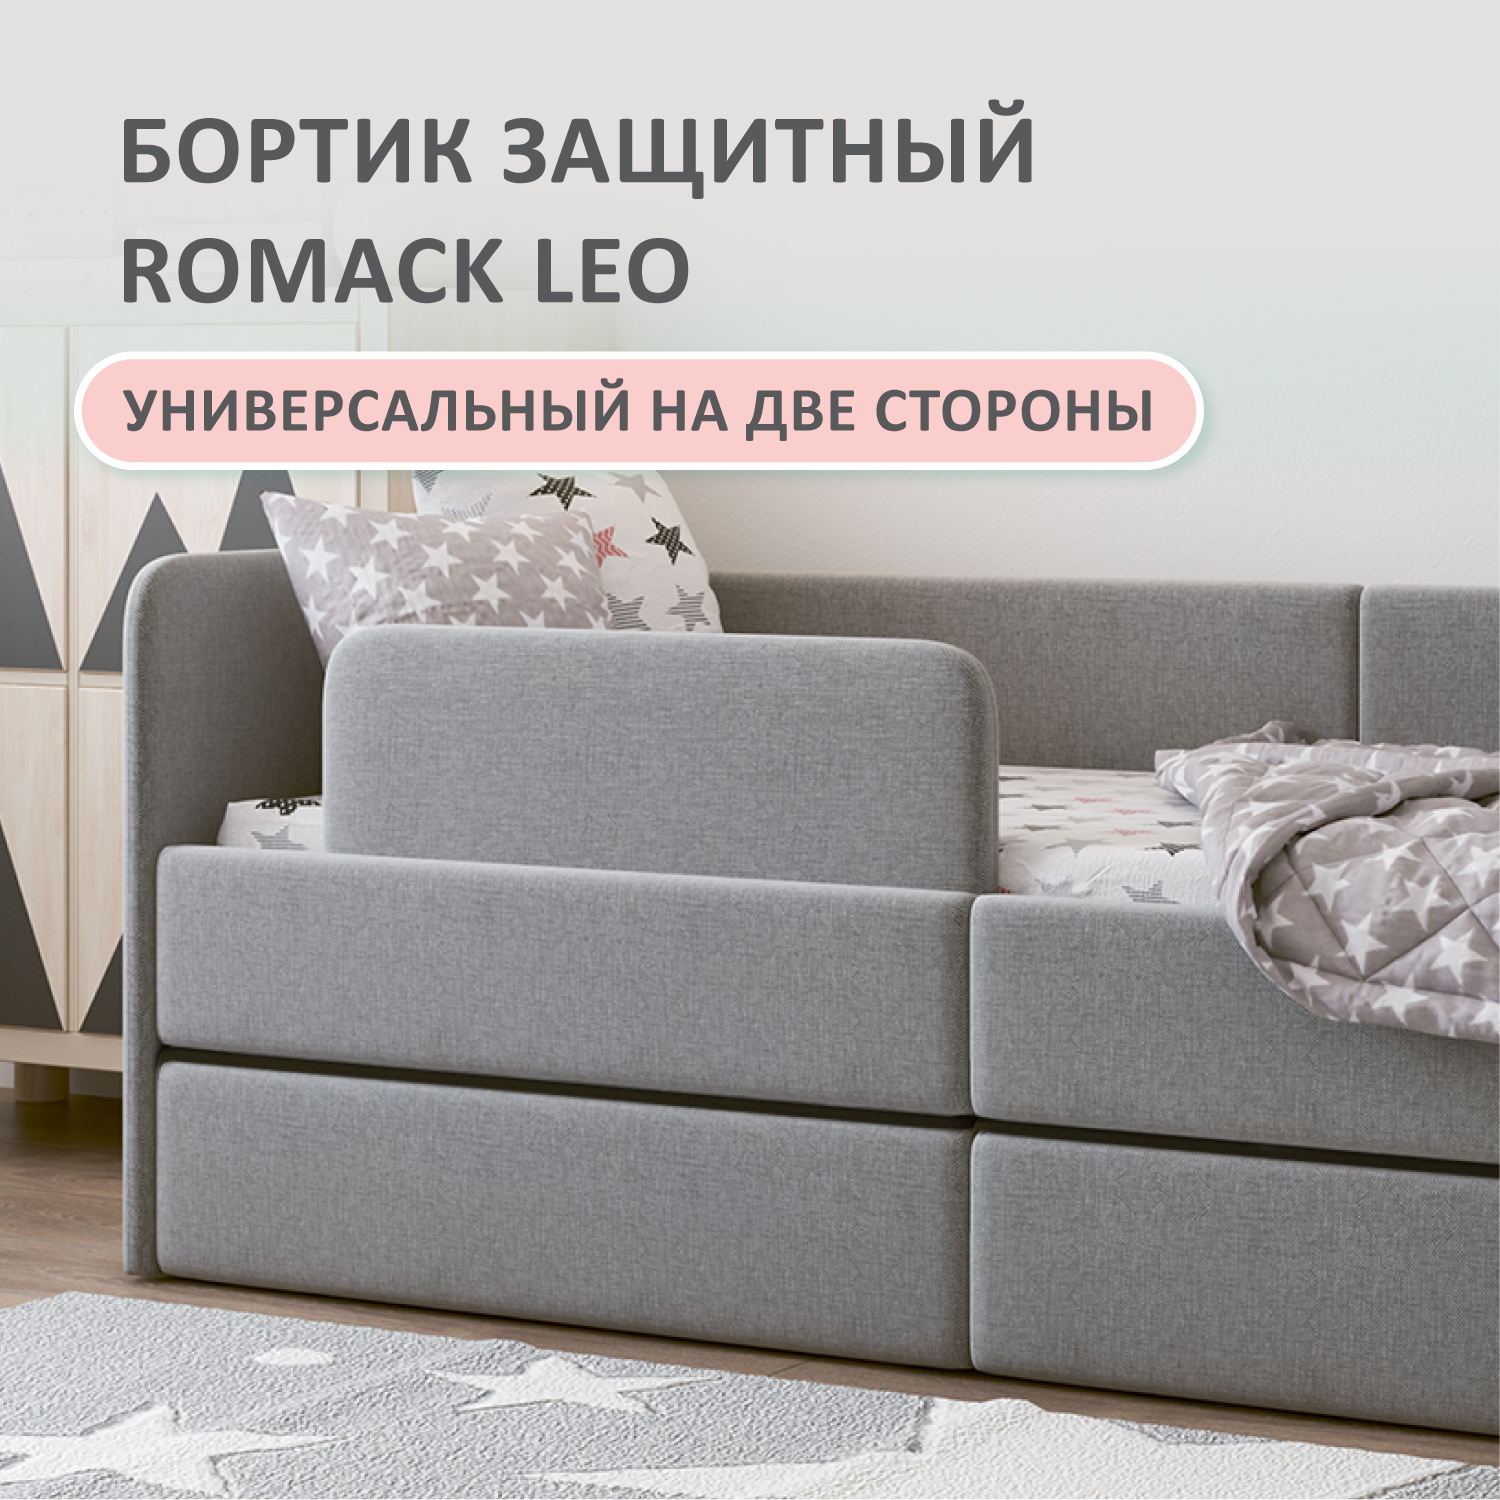 Бортик защитный на кровать Romack Leo, высота 20 см, цвет серый, рогожка, арт. 1000-188 romack подушка рогожка 40x40